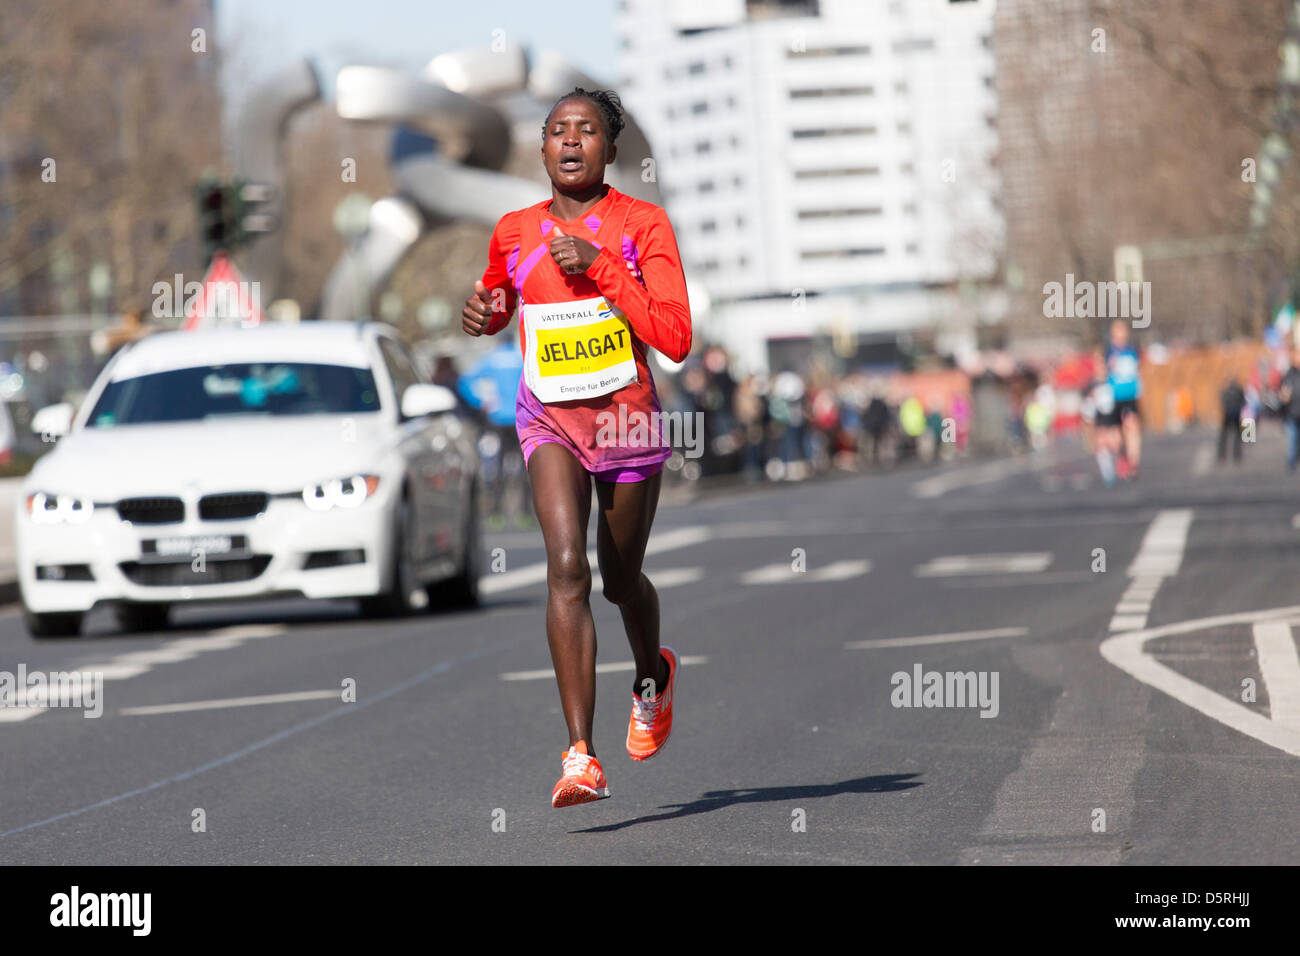 Berlin, Allemagne. 7 avril, 2013. Les participants de la 33e demi-marathon au km 14, Jelagat, 2013 à Berlin, Allemagne. Banque D'Images